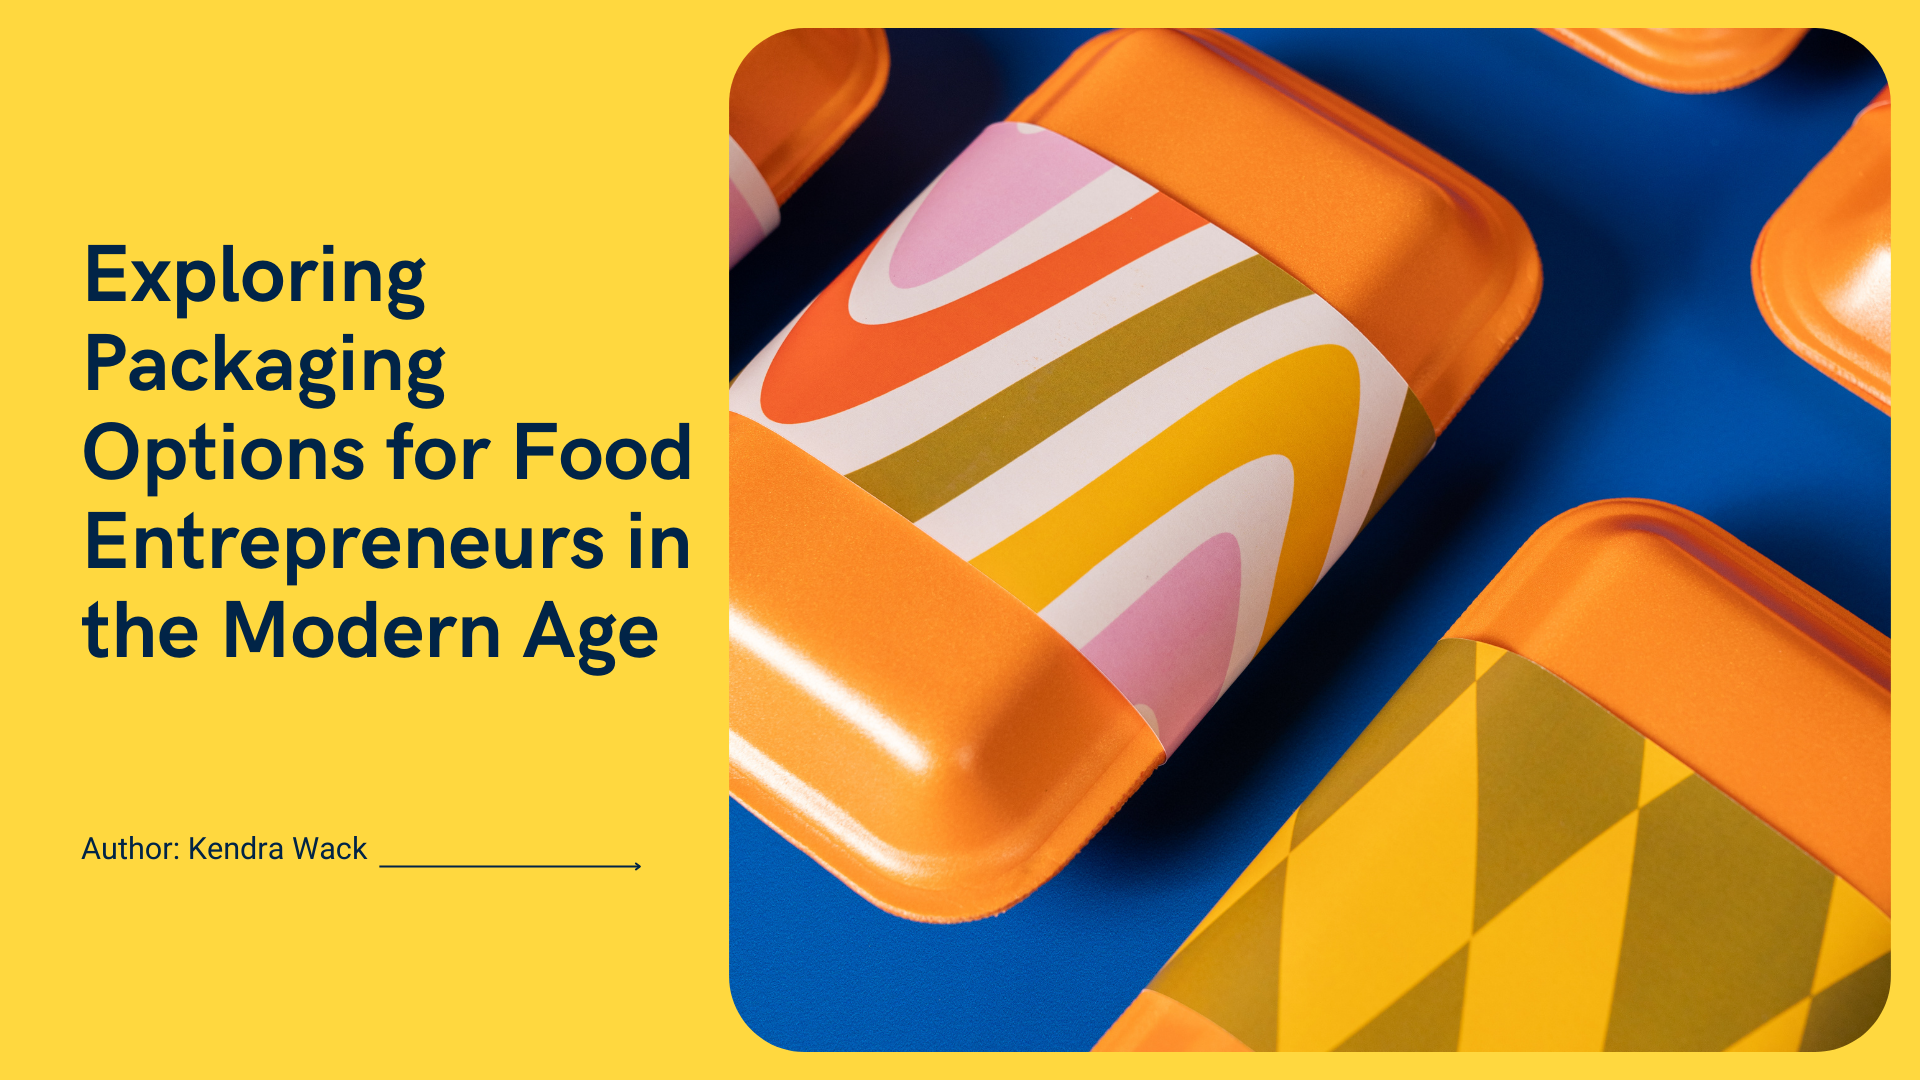 Exploration des options d'emballage pour les entrepreneurs du secteur alimentaire à l'ère moderne